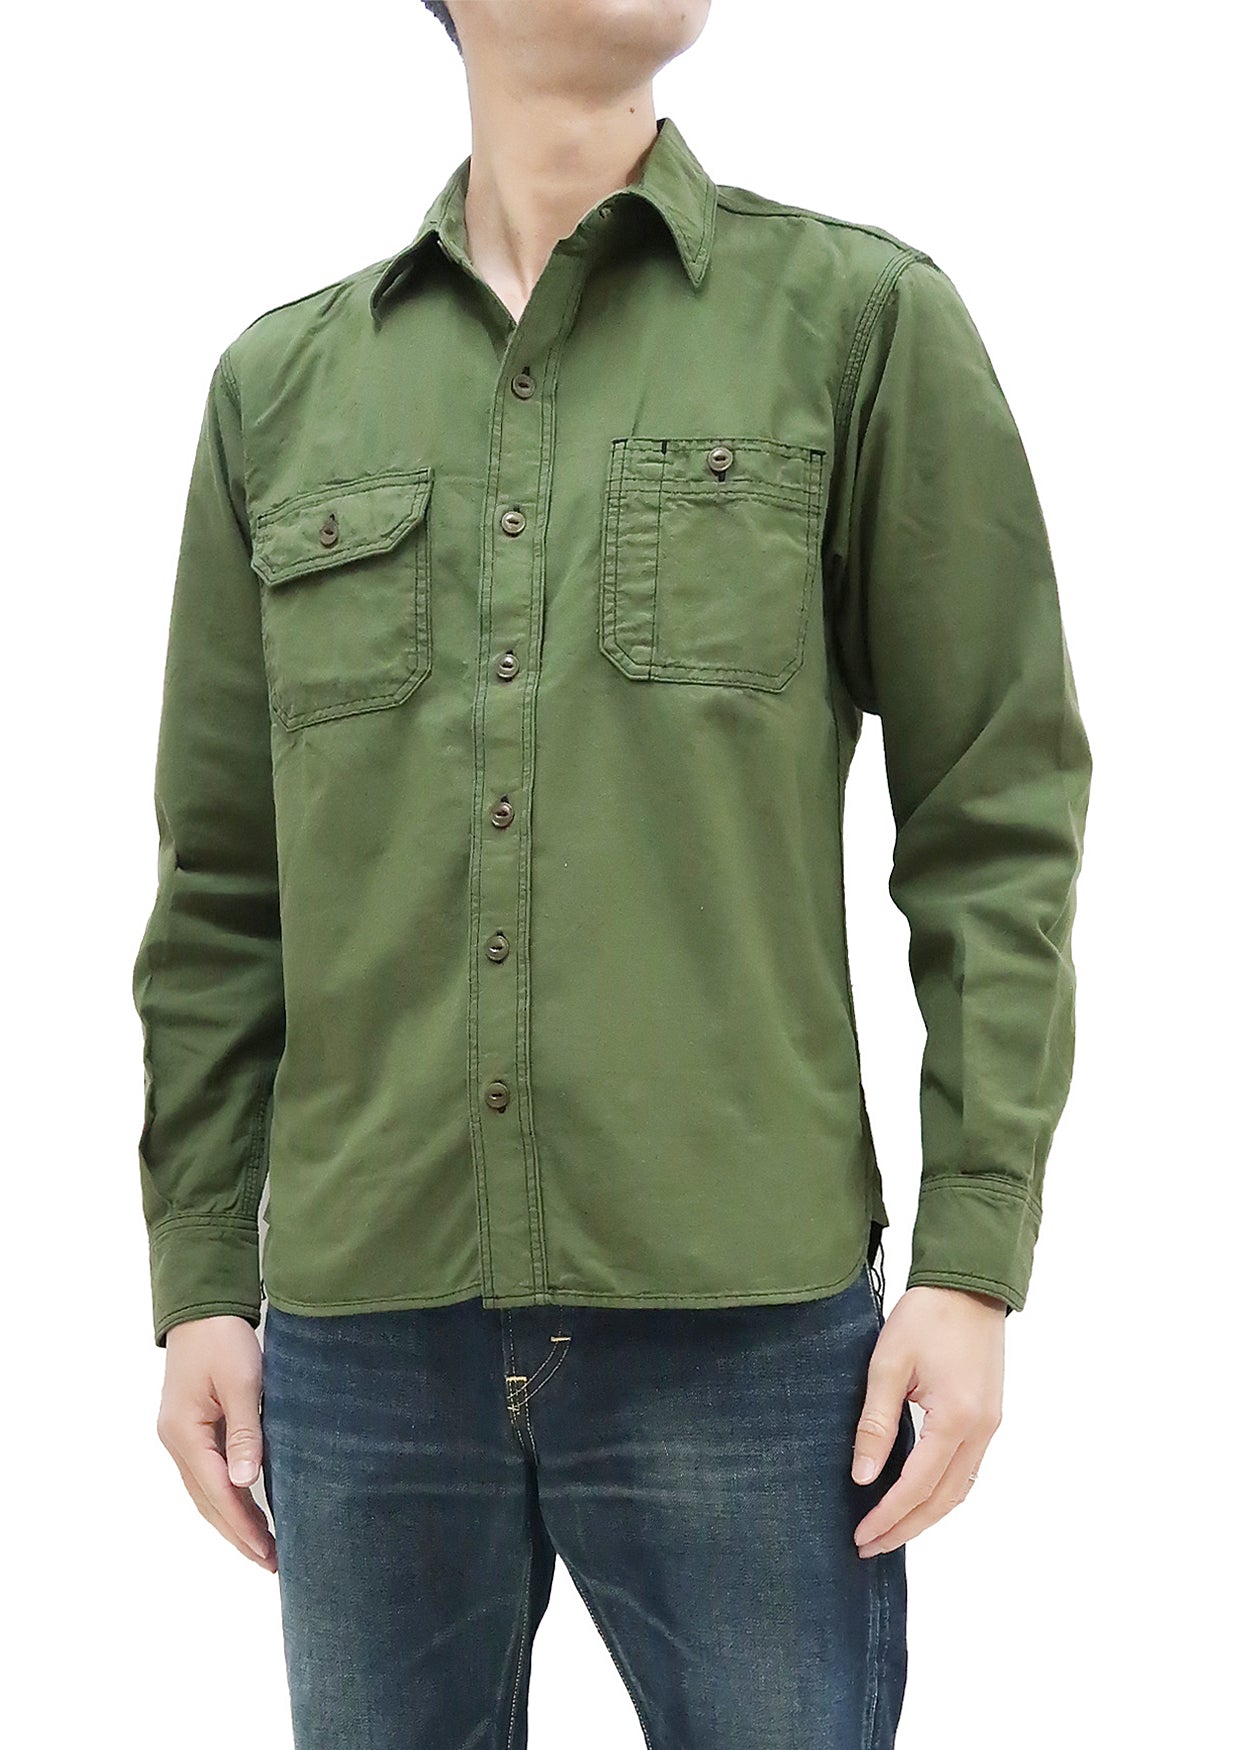 Pista Green Double Pocket denim shirt for mens – Albatross Clothing